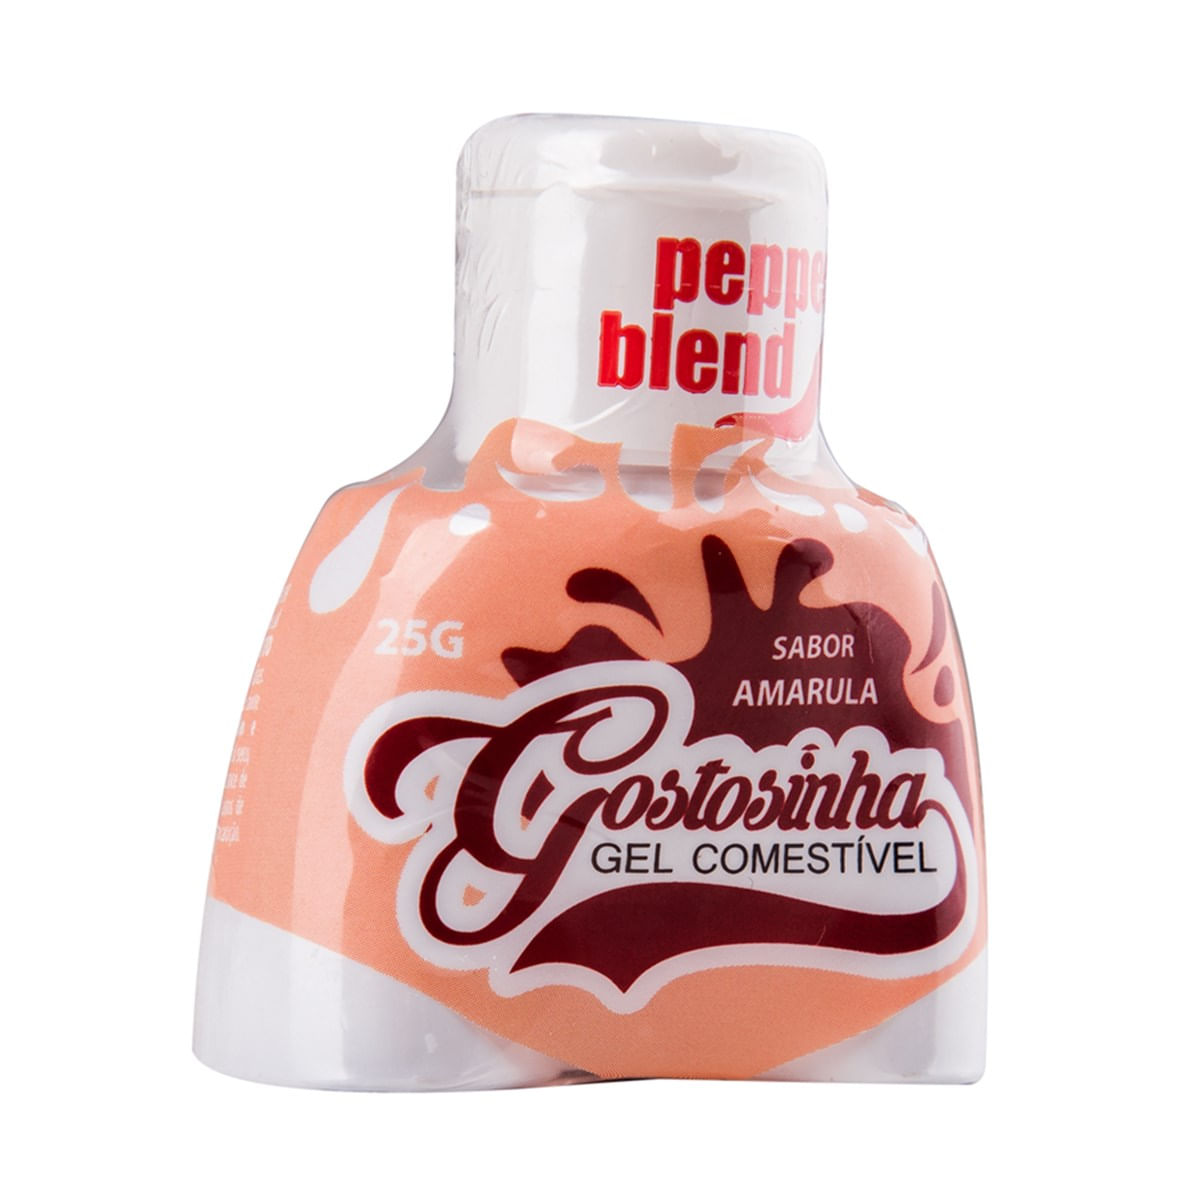 Gostosinha Gel Comestível Amarula 30gr Pepper Blend